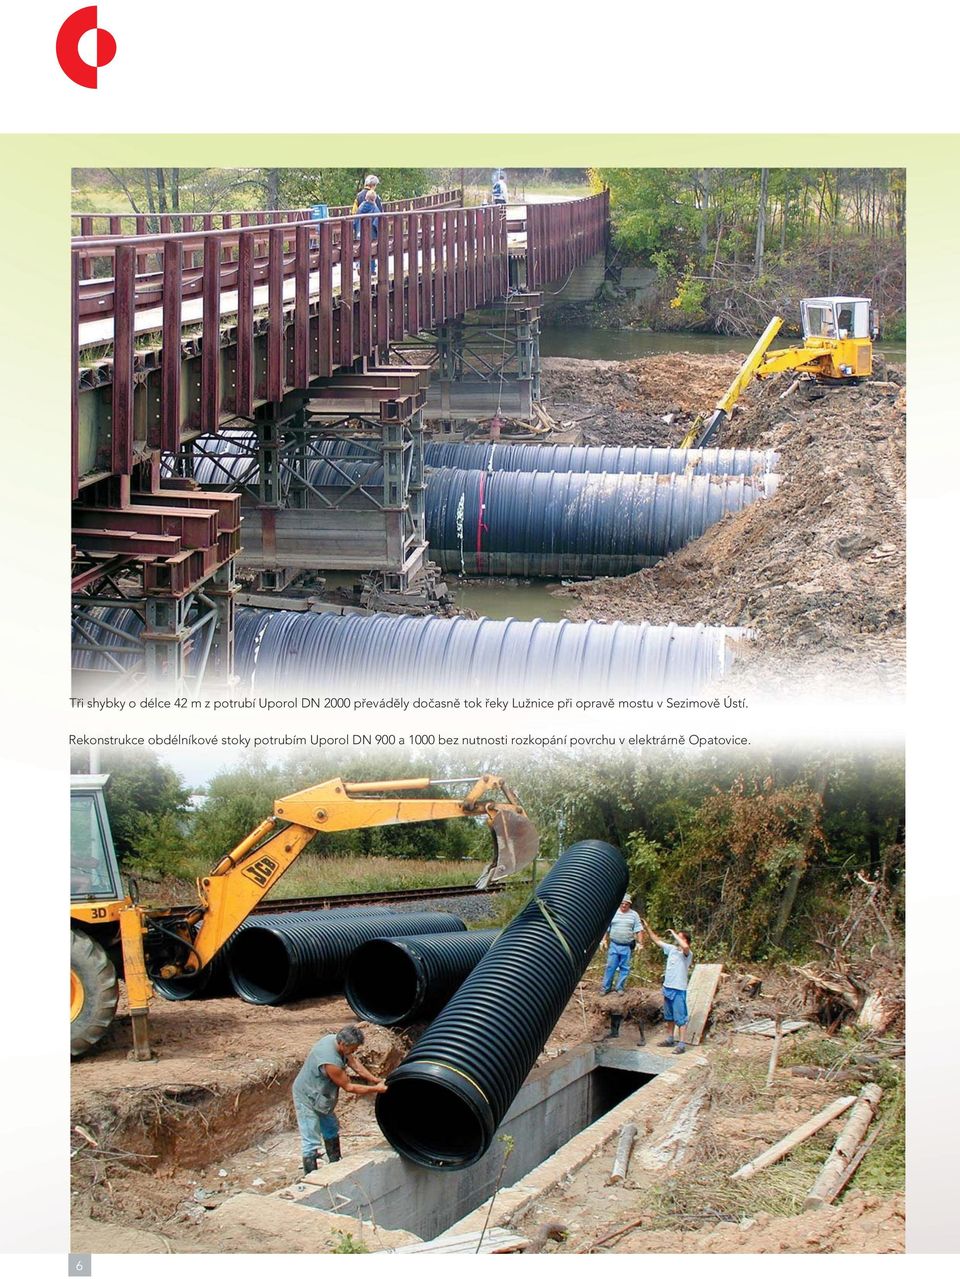 Rekonstrukce obdélníkové stoky potrubím Uporol DN 900 a